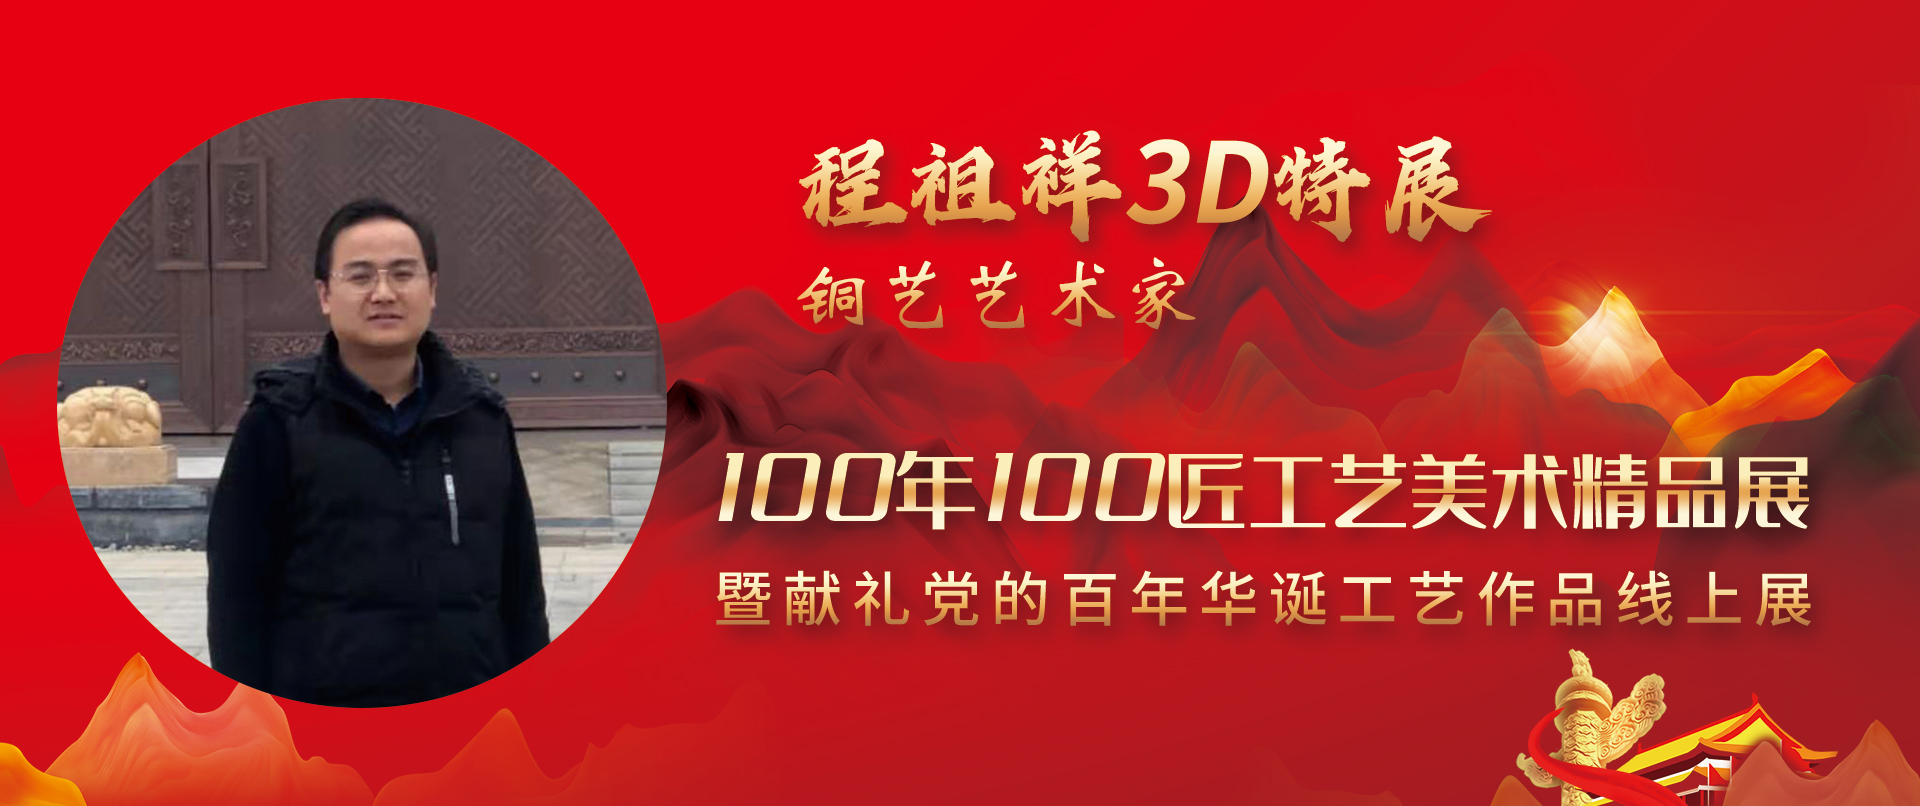 程祖祥3D特展-100年100匠工艺美术精品展